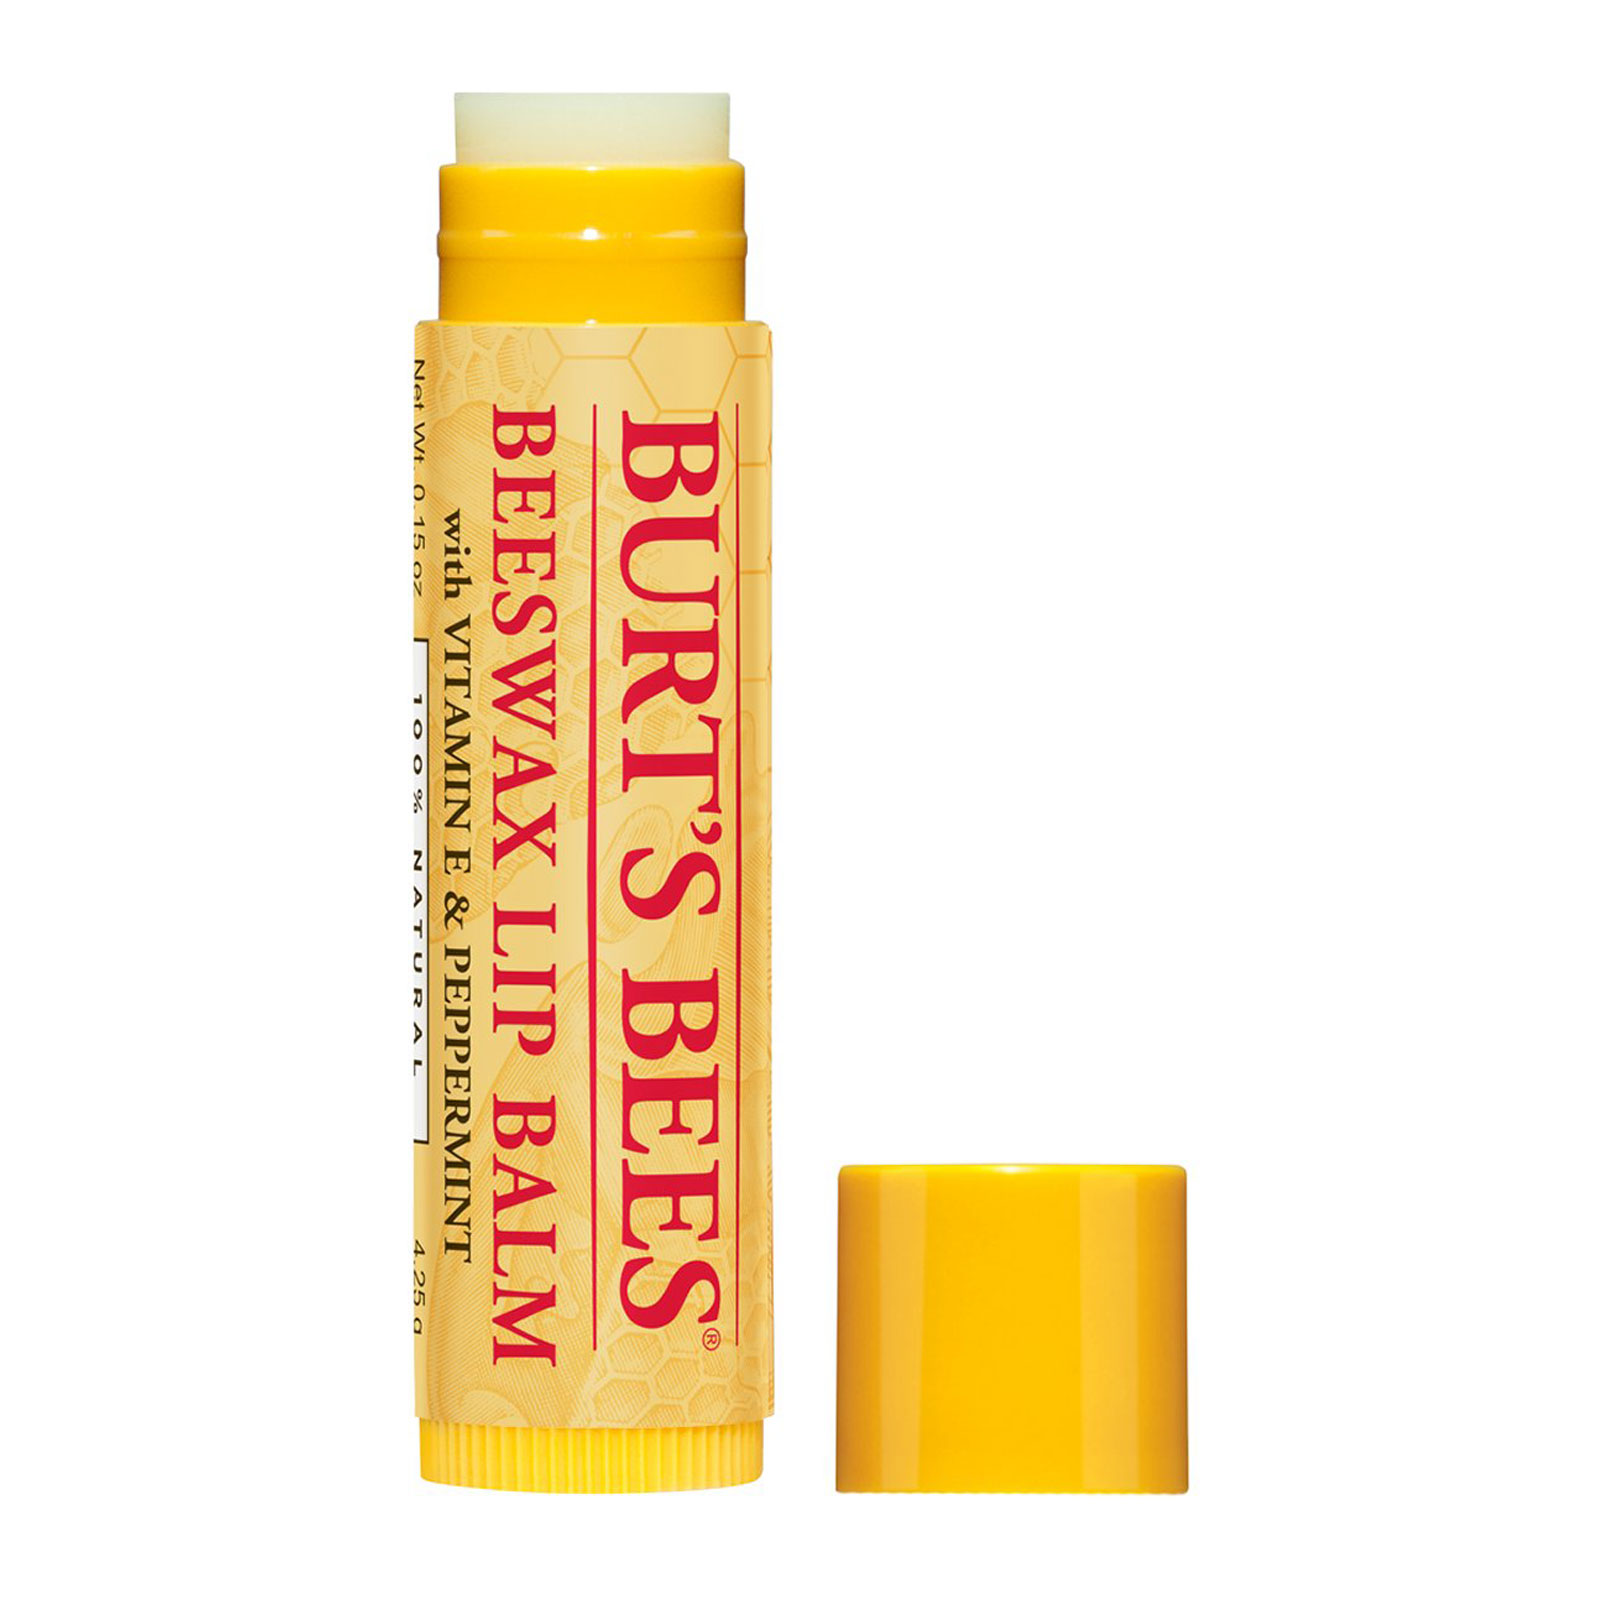 Burt's Bees Burt’s bees® beeswax lip balm tube 4.25g